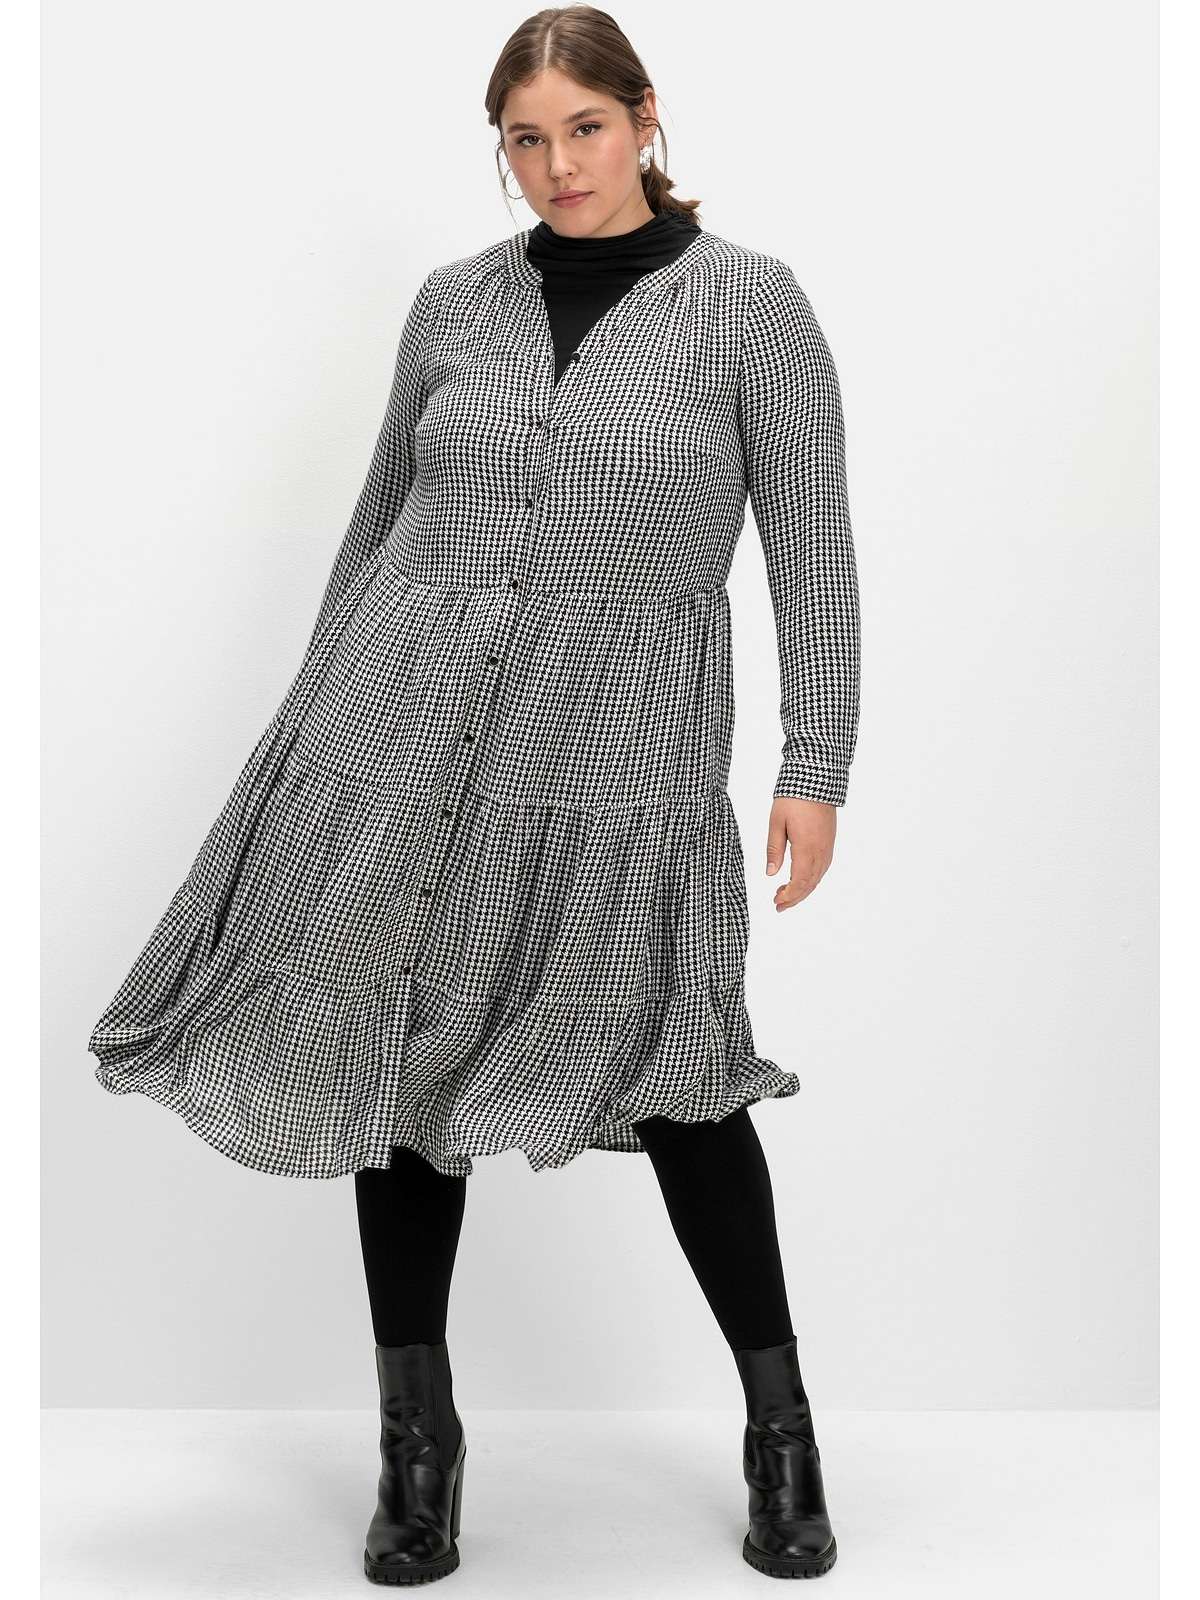 Платье-блузка с узором пепита, широкая расклешенная юбка.